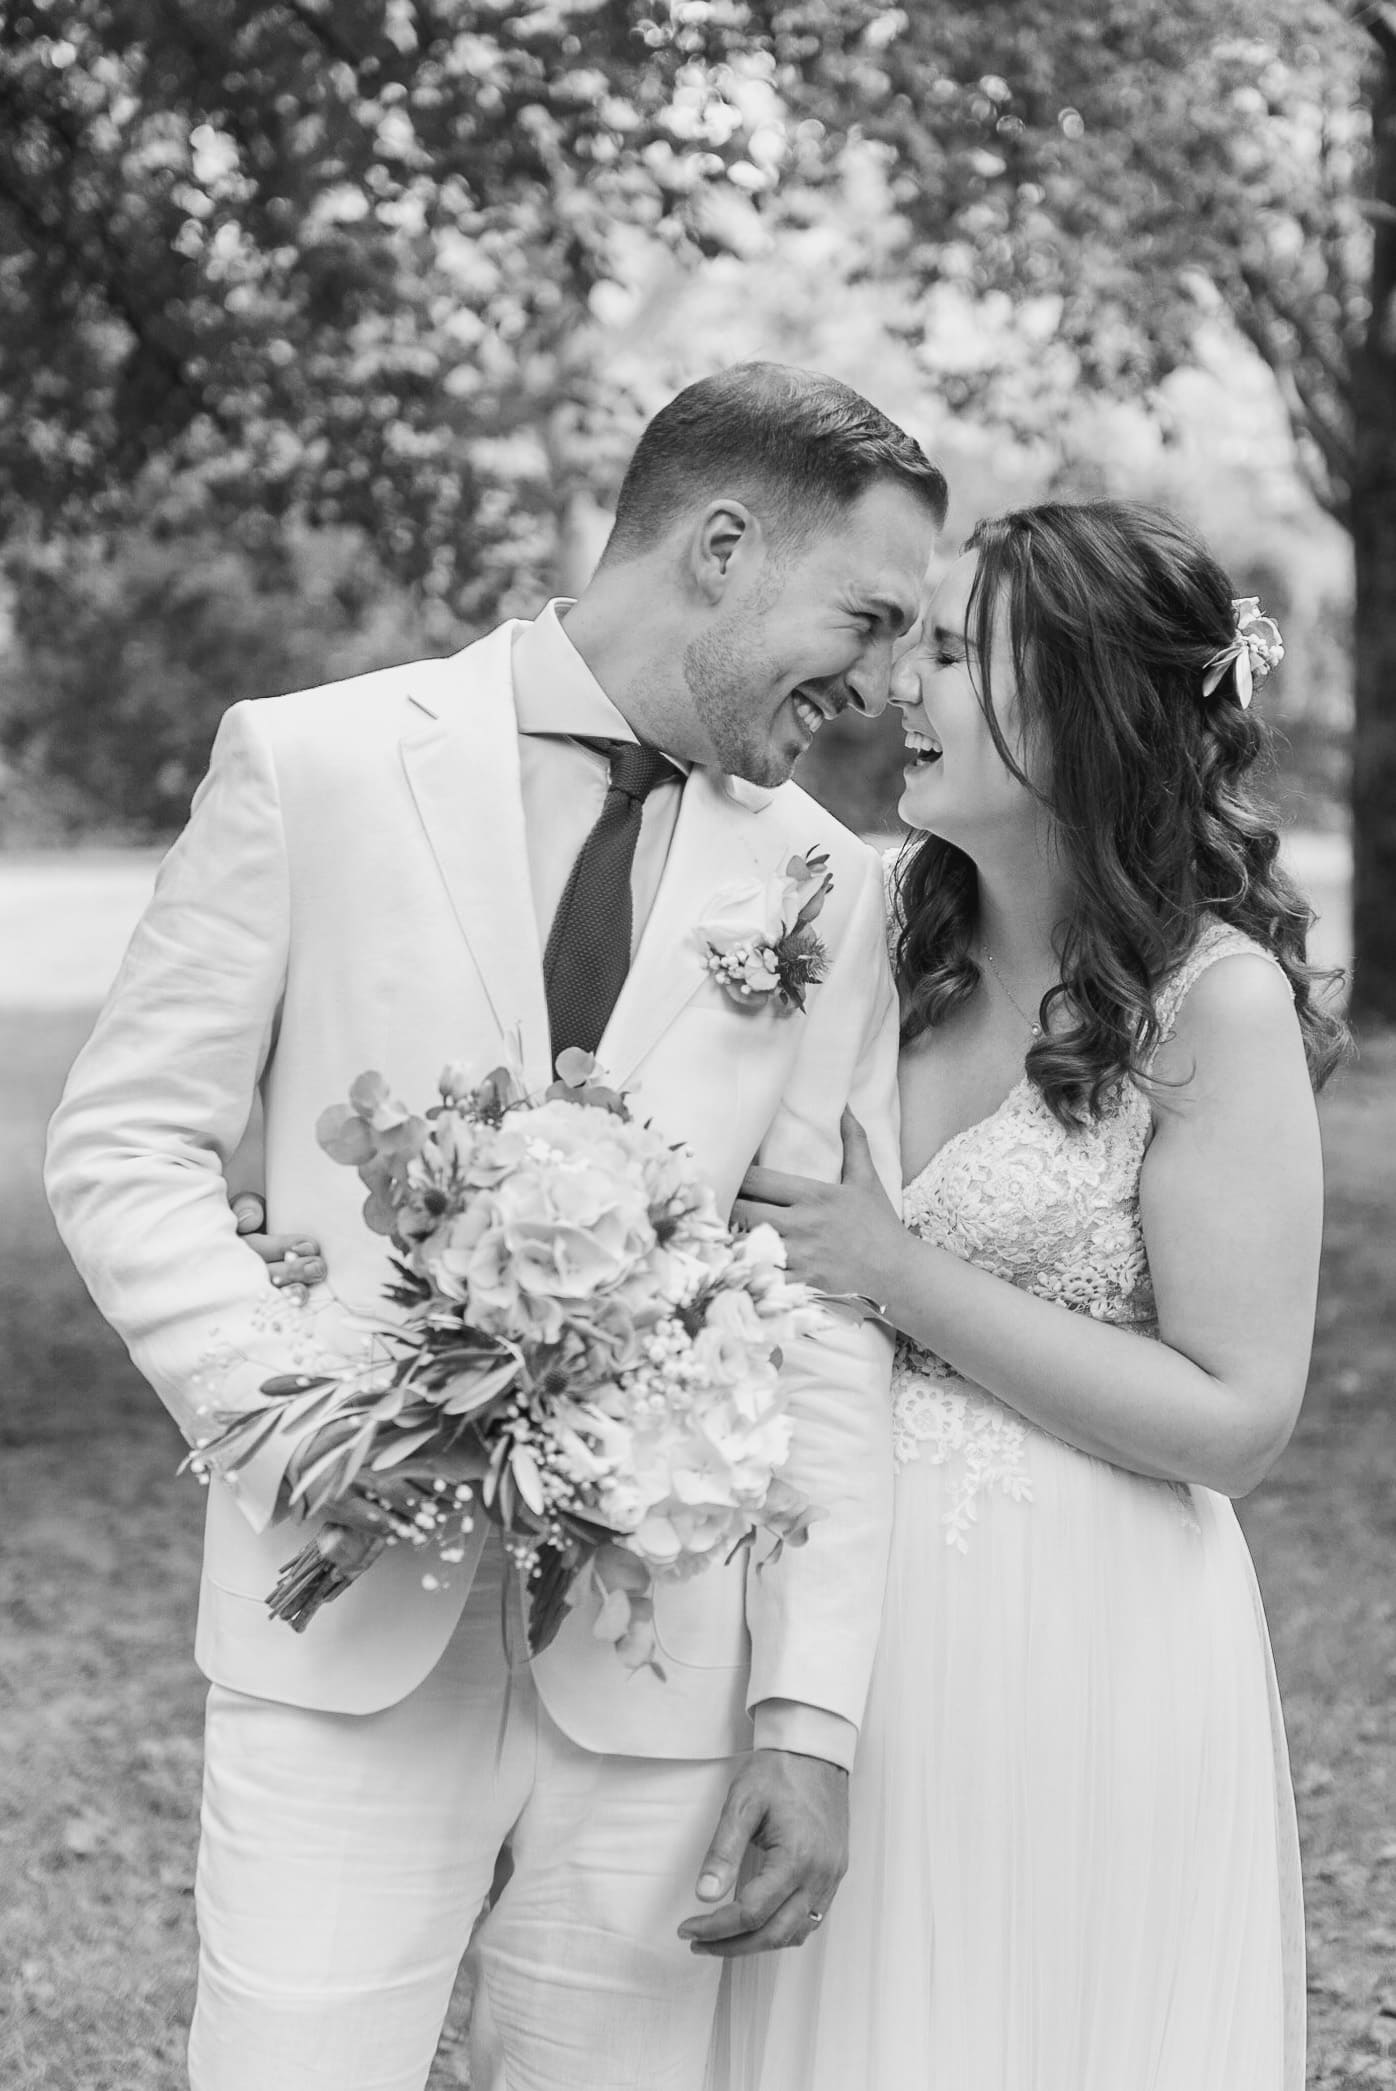 Ein glückliches Brautpaar lacht ausgelassen auf einer sommerlichen Wiese, der Bräutigam in einem weißen Anzug und die Braut in einem zarten, mit Spitze verzierten Kleid, umarmt und hält einen großen Blumenstrauß.